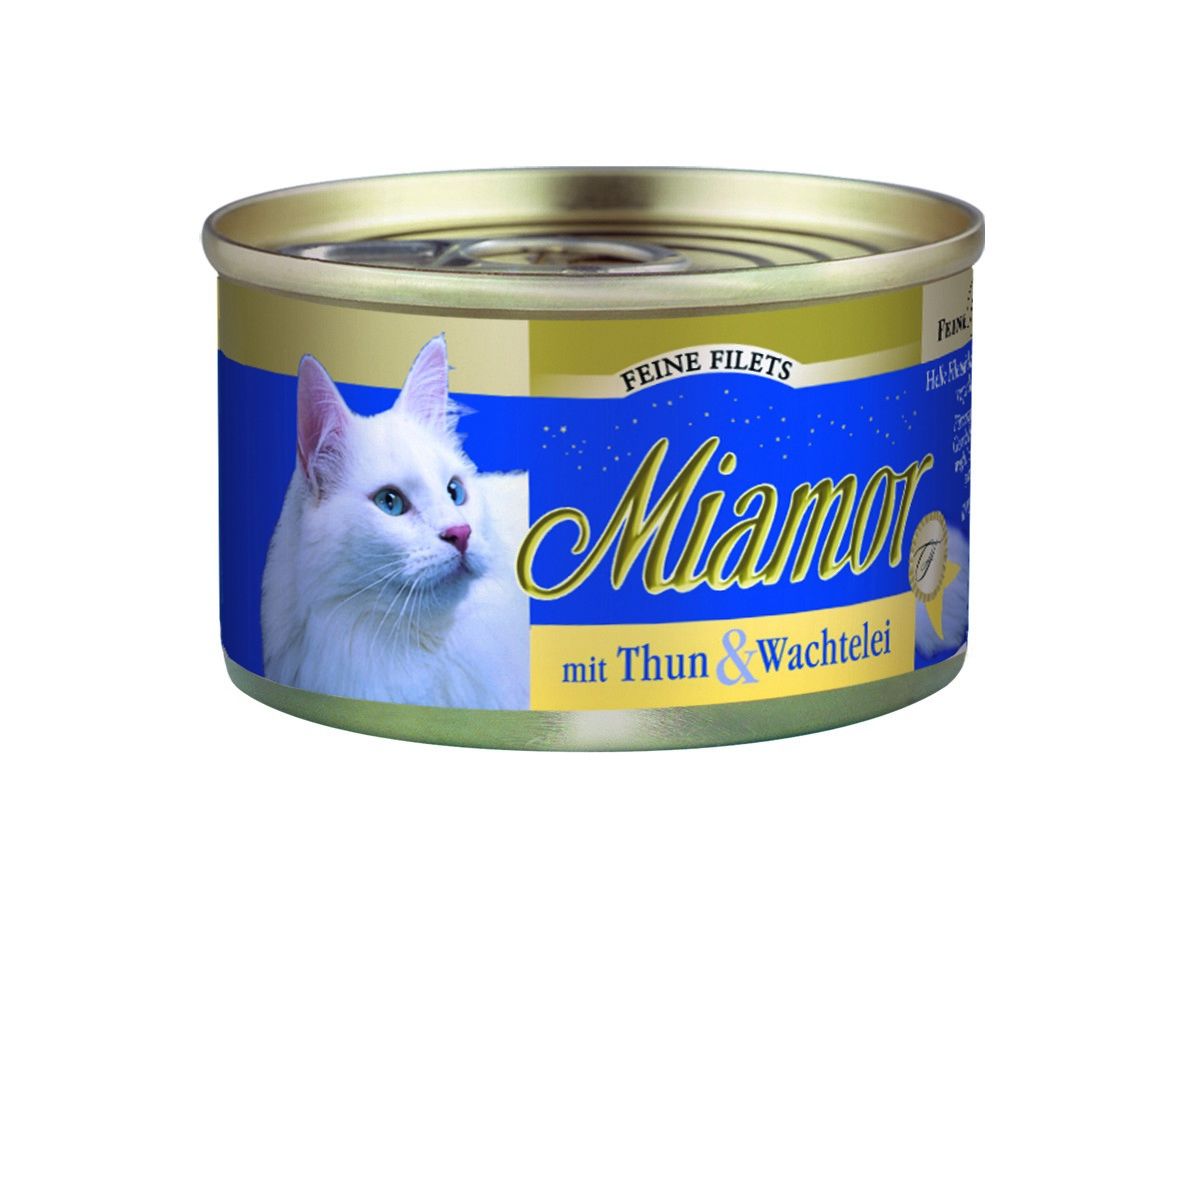 Miamor Cat Filet konzerva tuňák+křepel. vejce želé100g Finnern Miamor